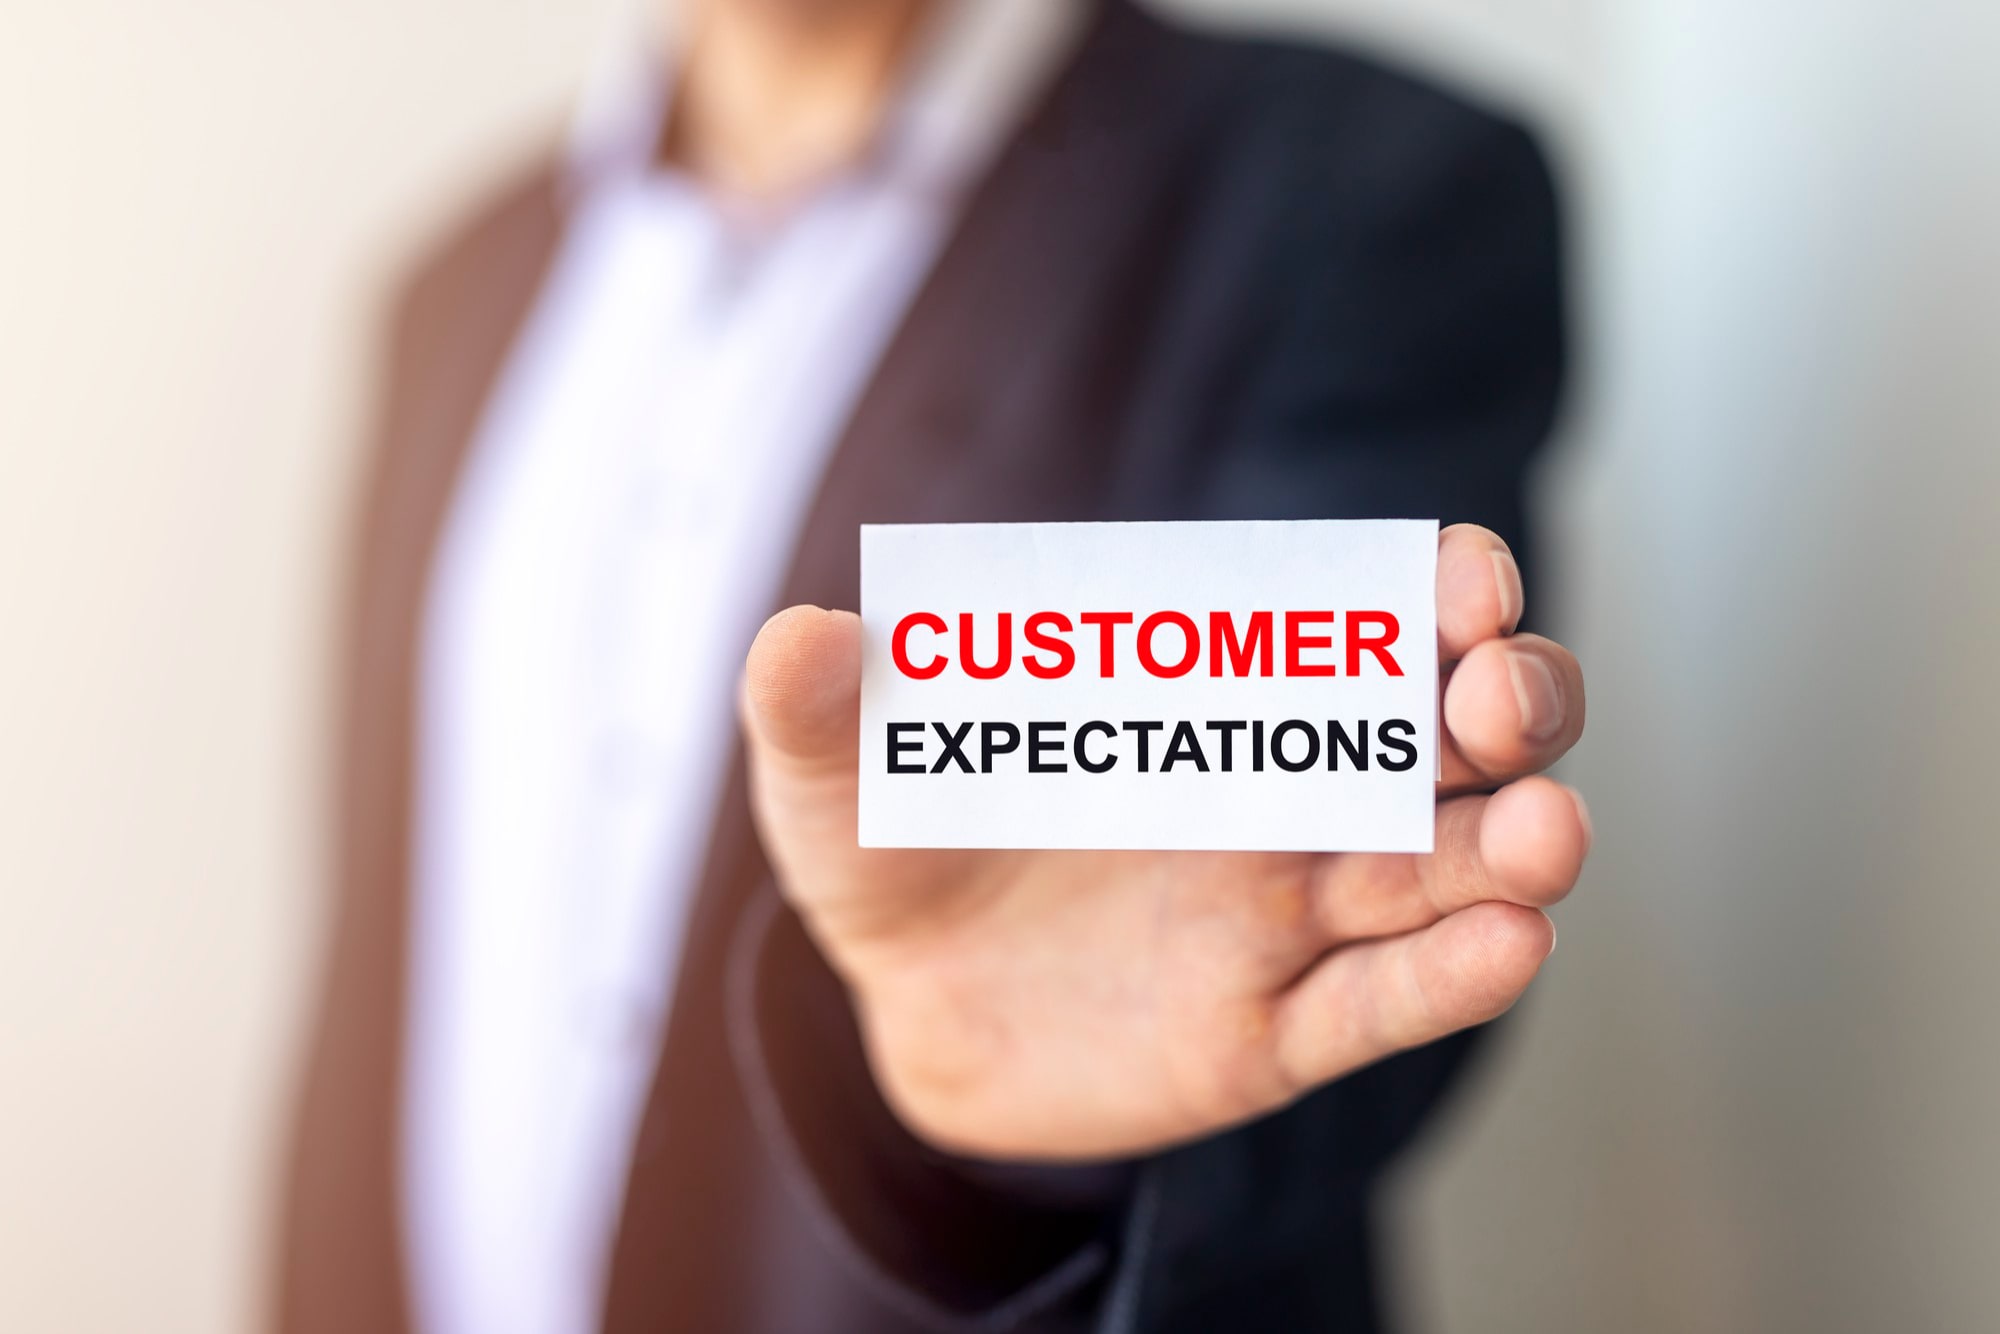 Kundenerwartungen - Das hat sich geändert